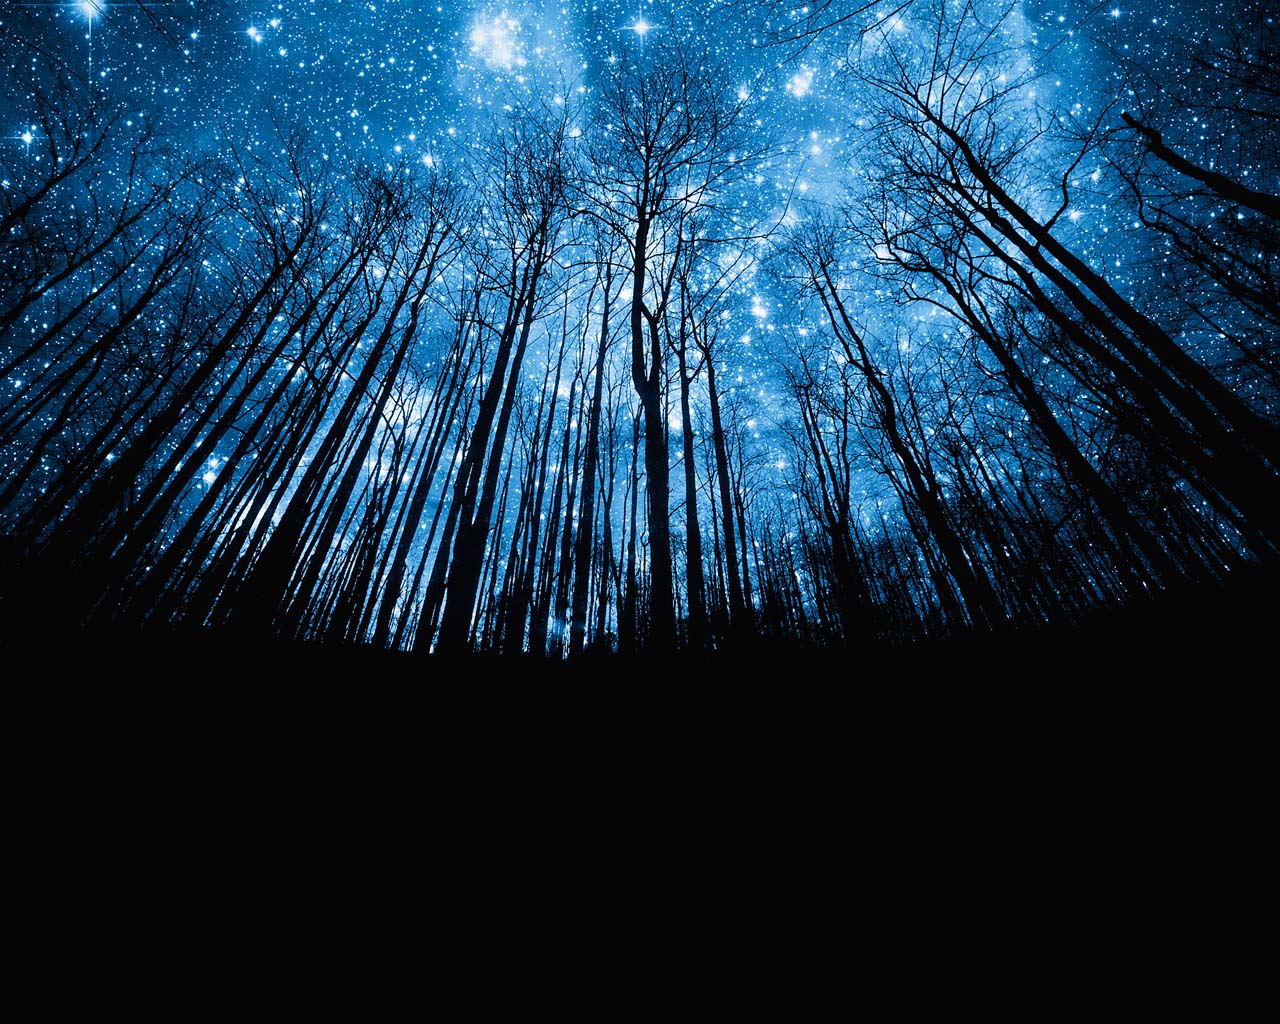 静谧的森林与夜空中皎洁明亮的月亮交相呼应